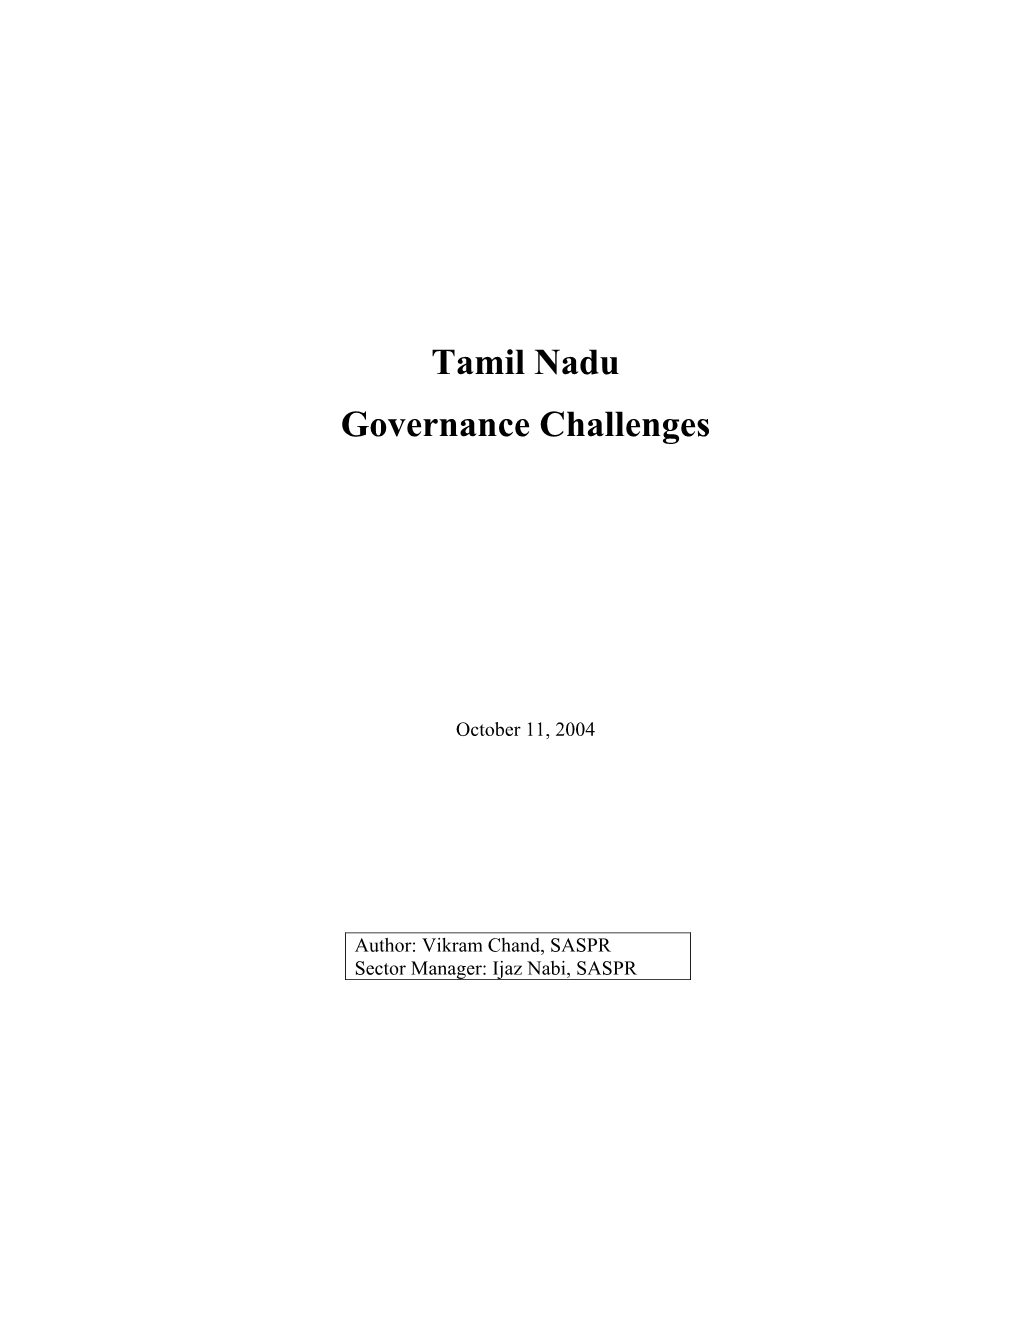 Tamil Nadu Governance Challenges